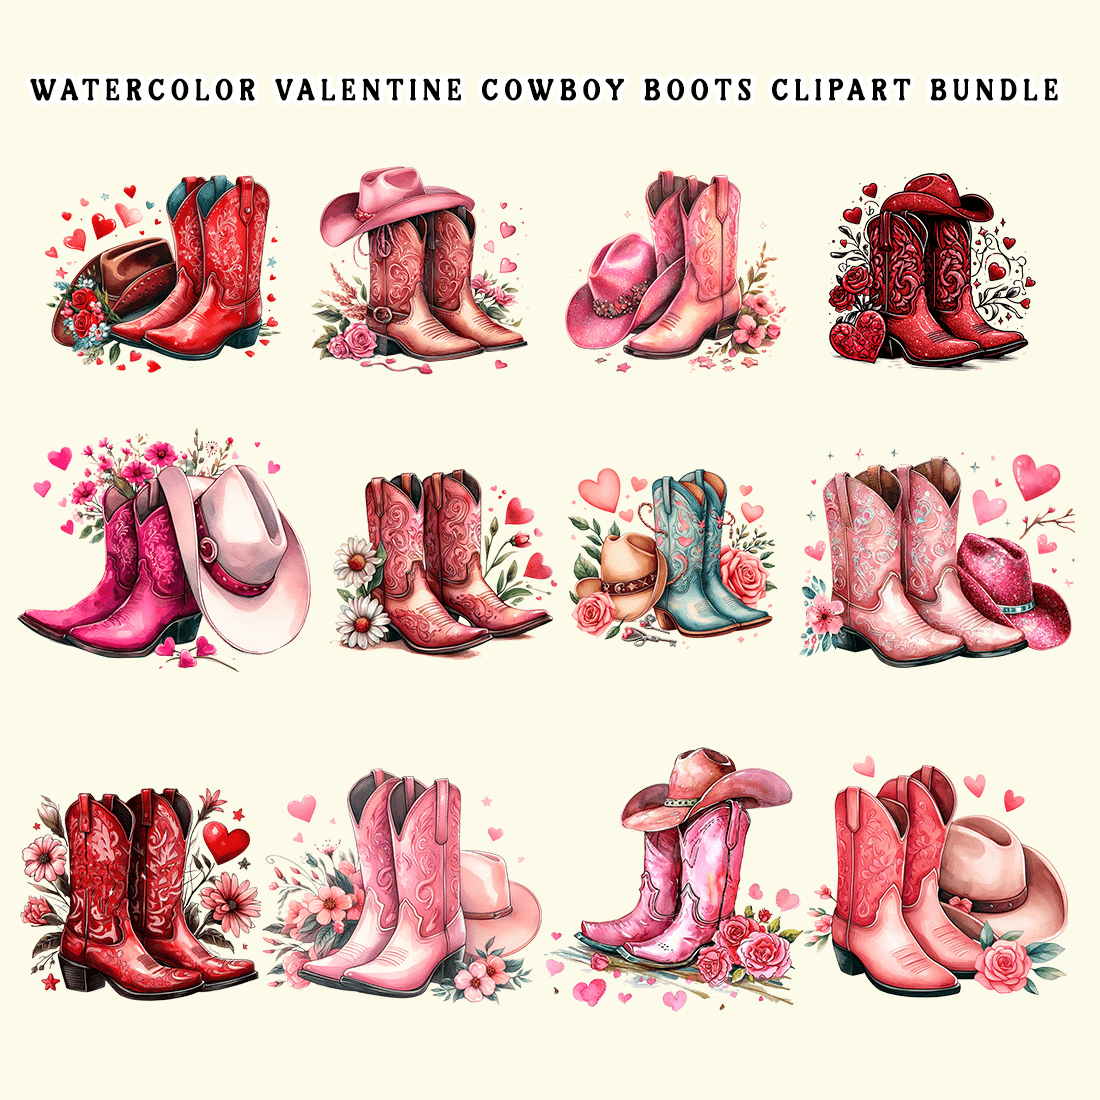 Watercolor Valentine Cowboy Boots Clipart Bundle preview image.